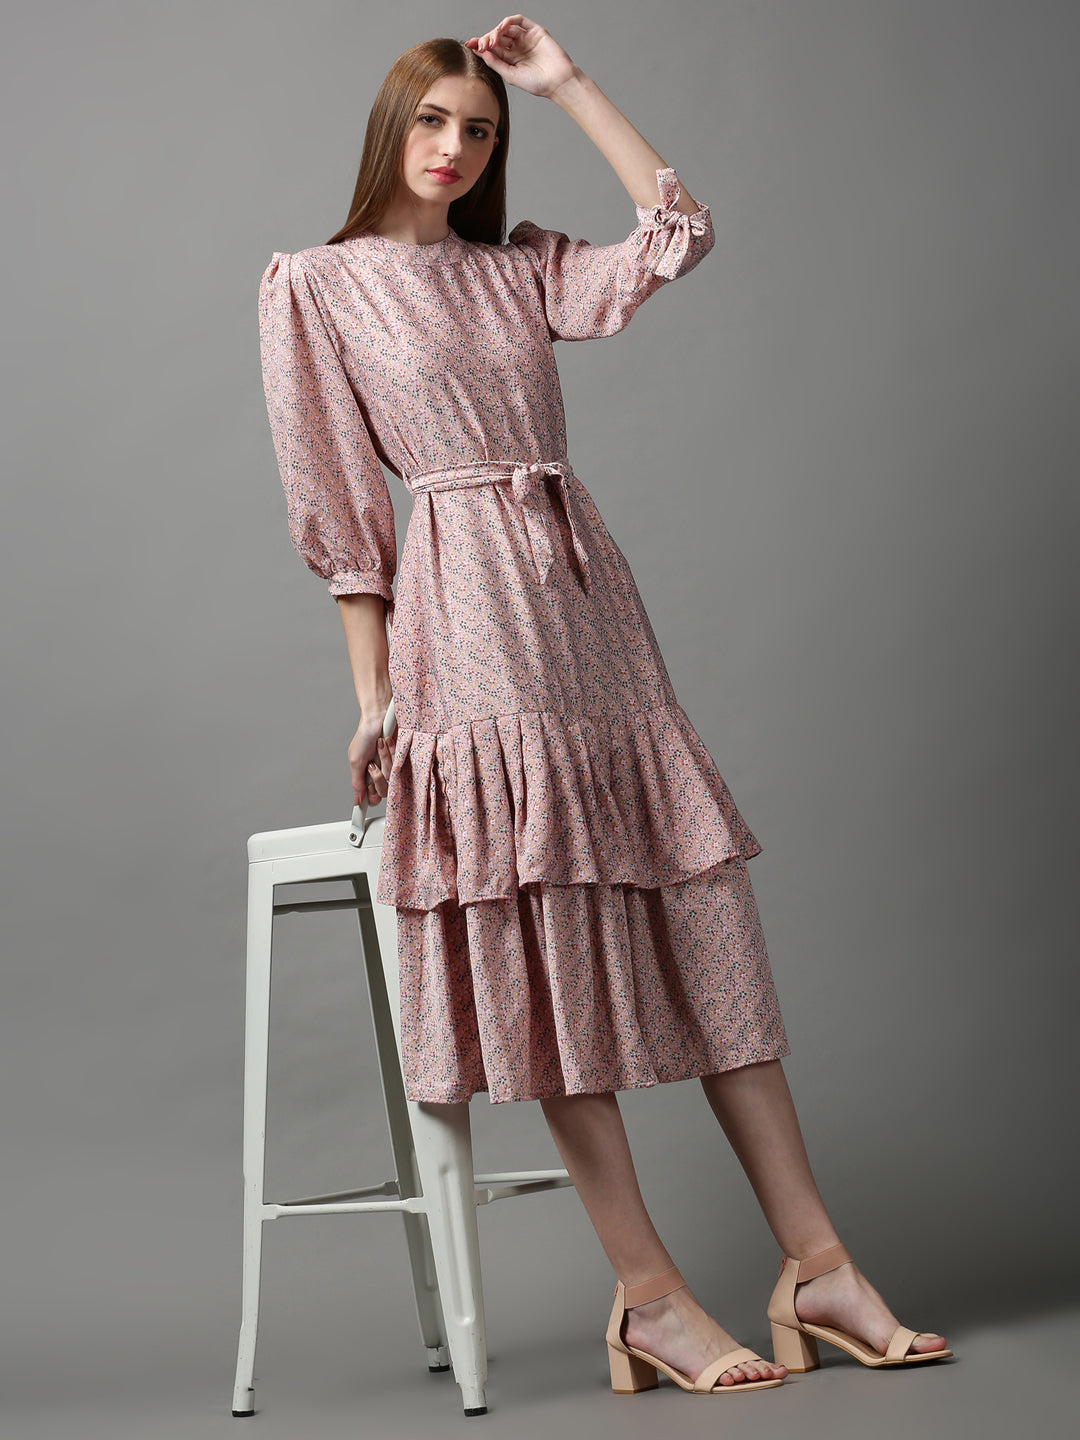 Women's Pink Printed Drop-Waist Dress